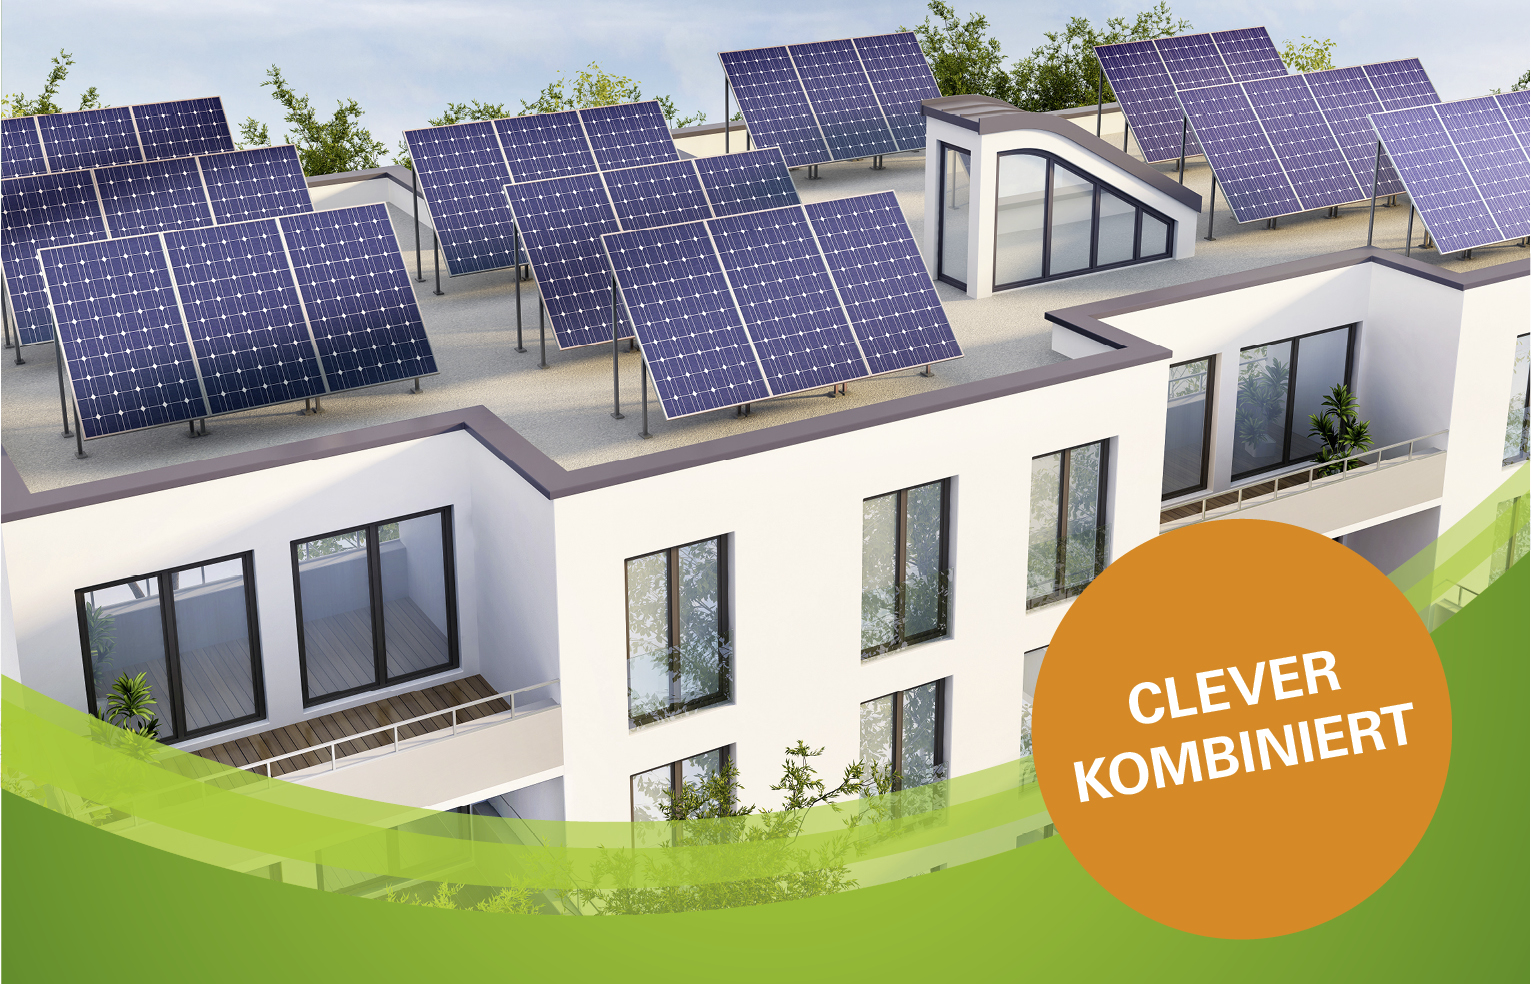 Bild mit einer modernen Häuserreihe und Solarstromanlagen auf den Dächern